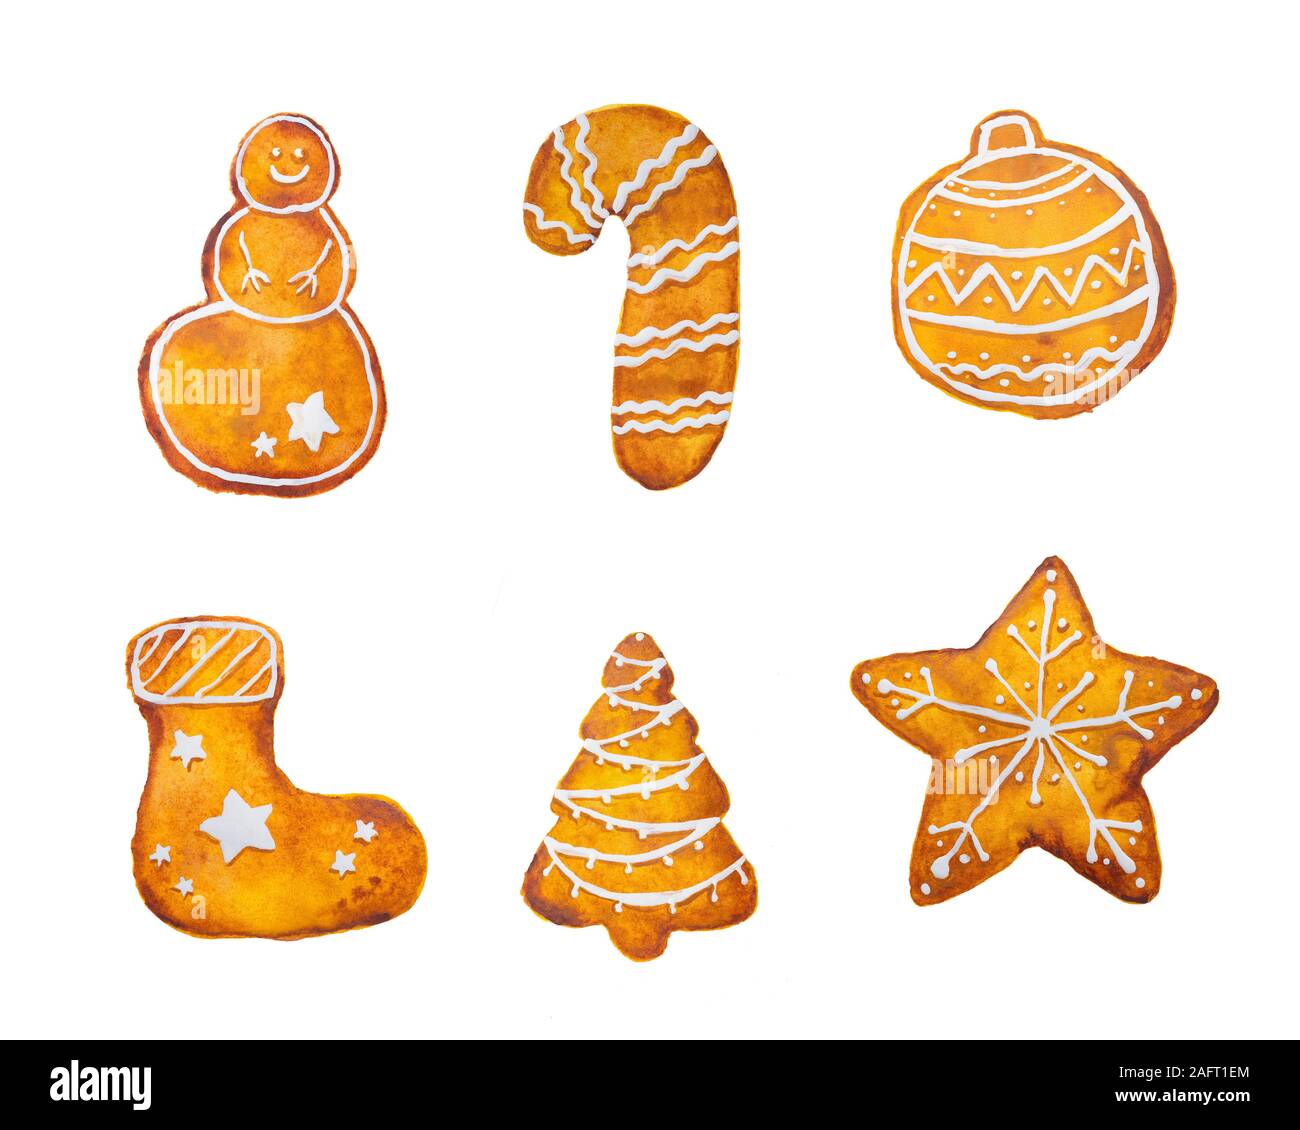 Dibujo de acuarela dibujado a mano de Navidad gingerbread copo de nieve estrella árbol de muñeco de nieve media sobre fondo blanco, aislado Foto de stock